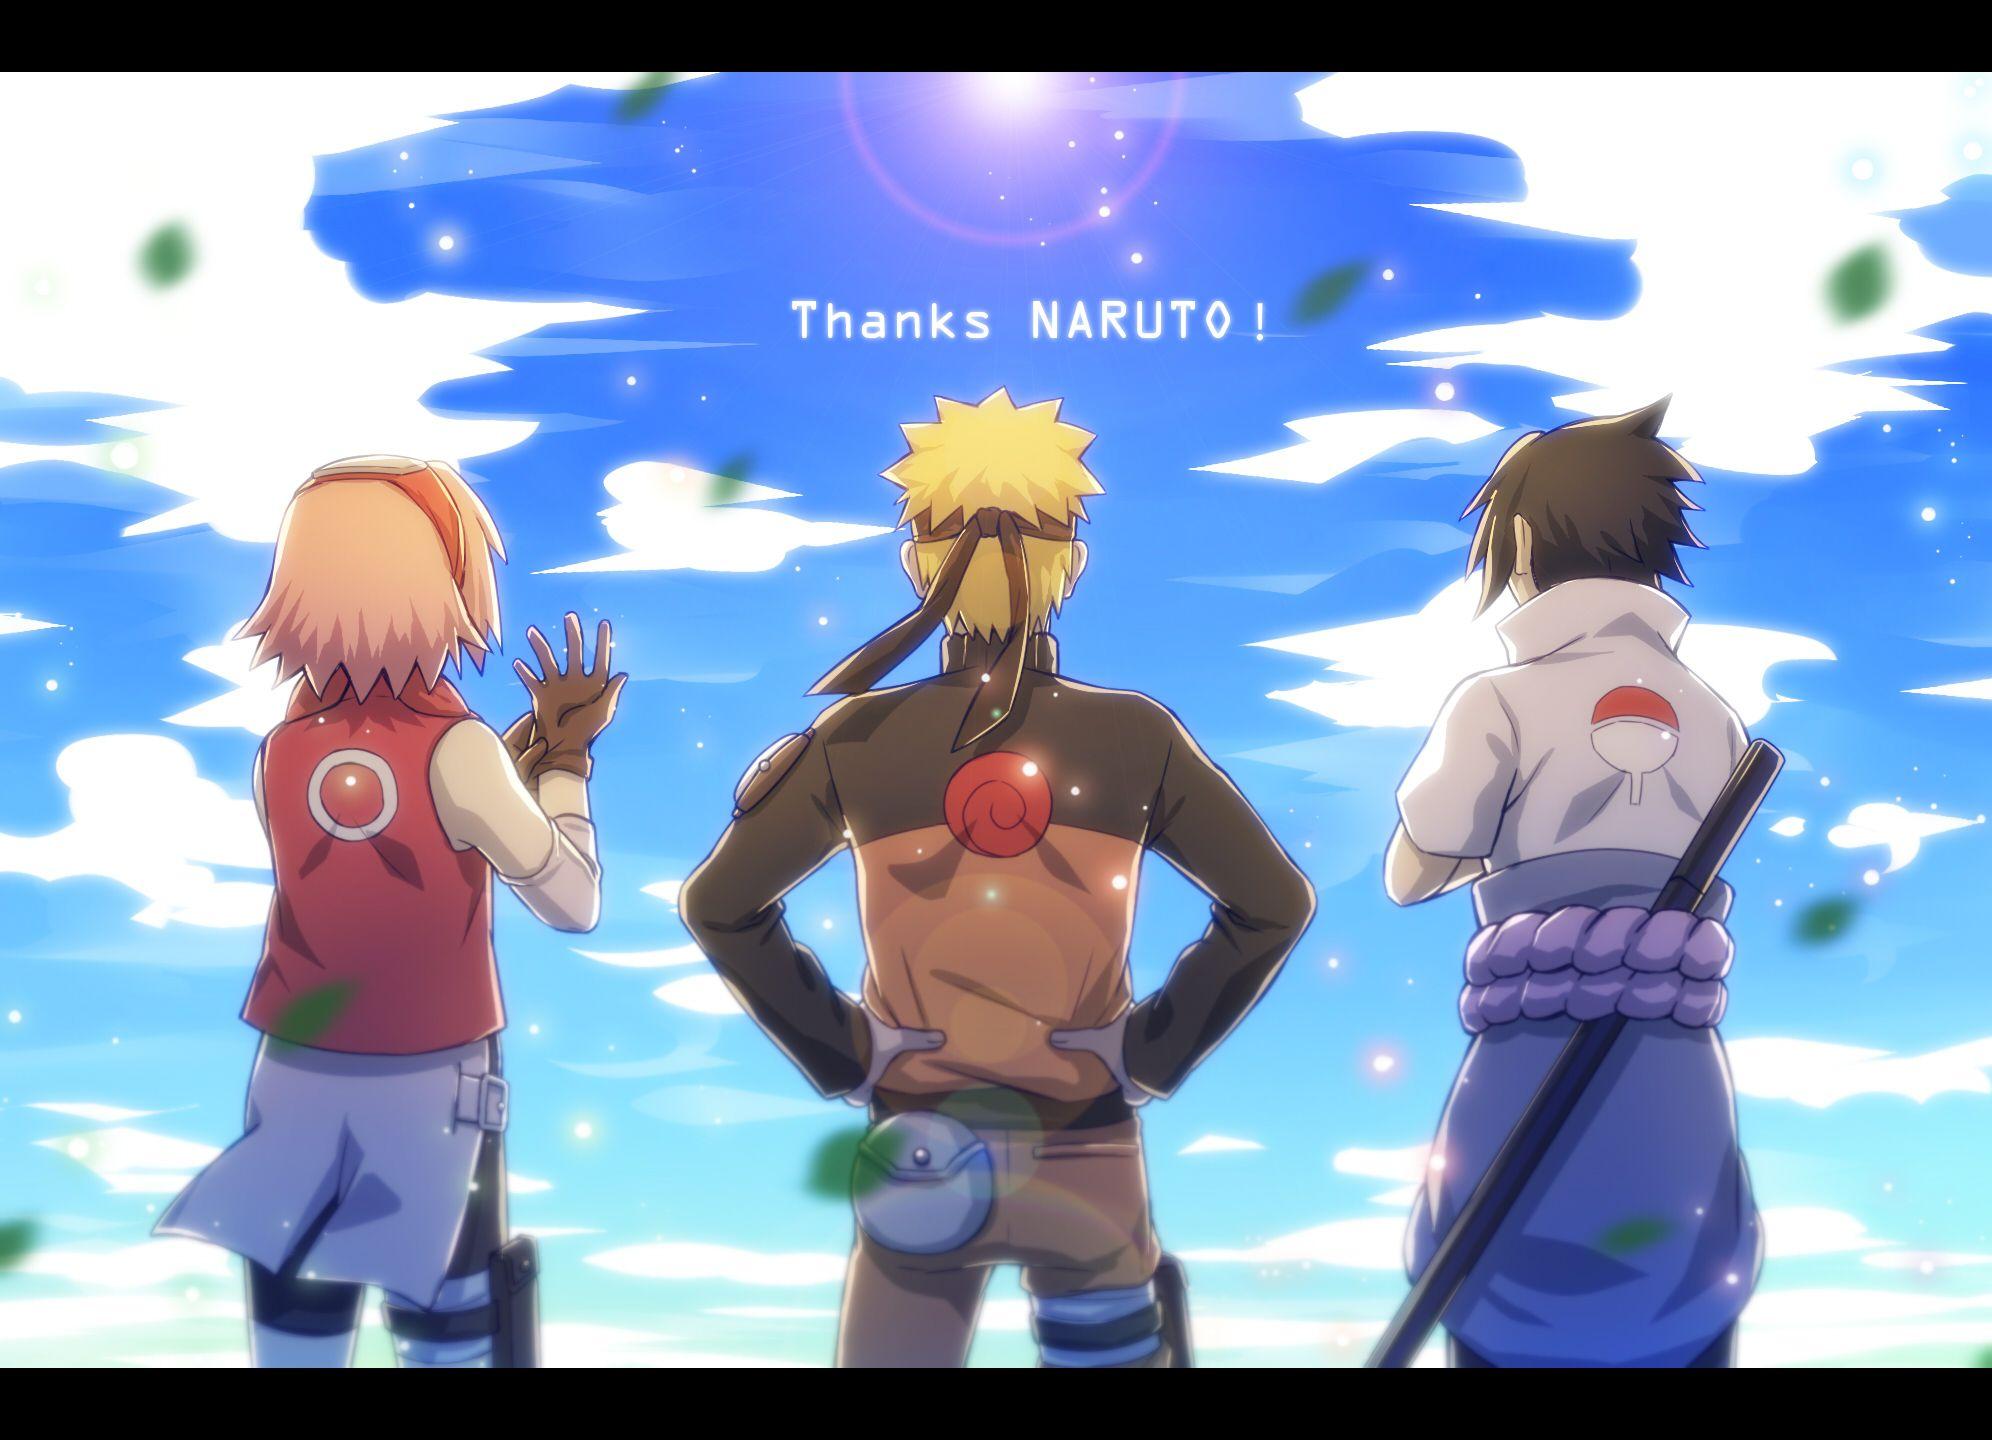 NARUTO最終回記念. naruto shipuuden. Team Naruto and 7